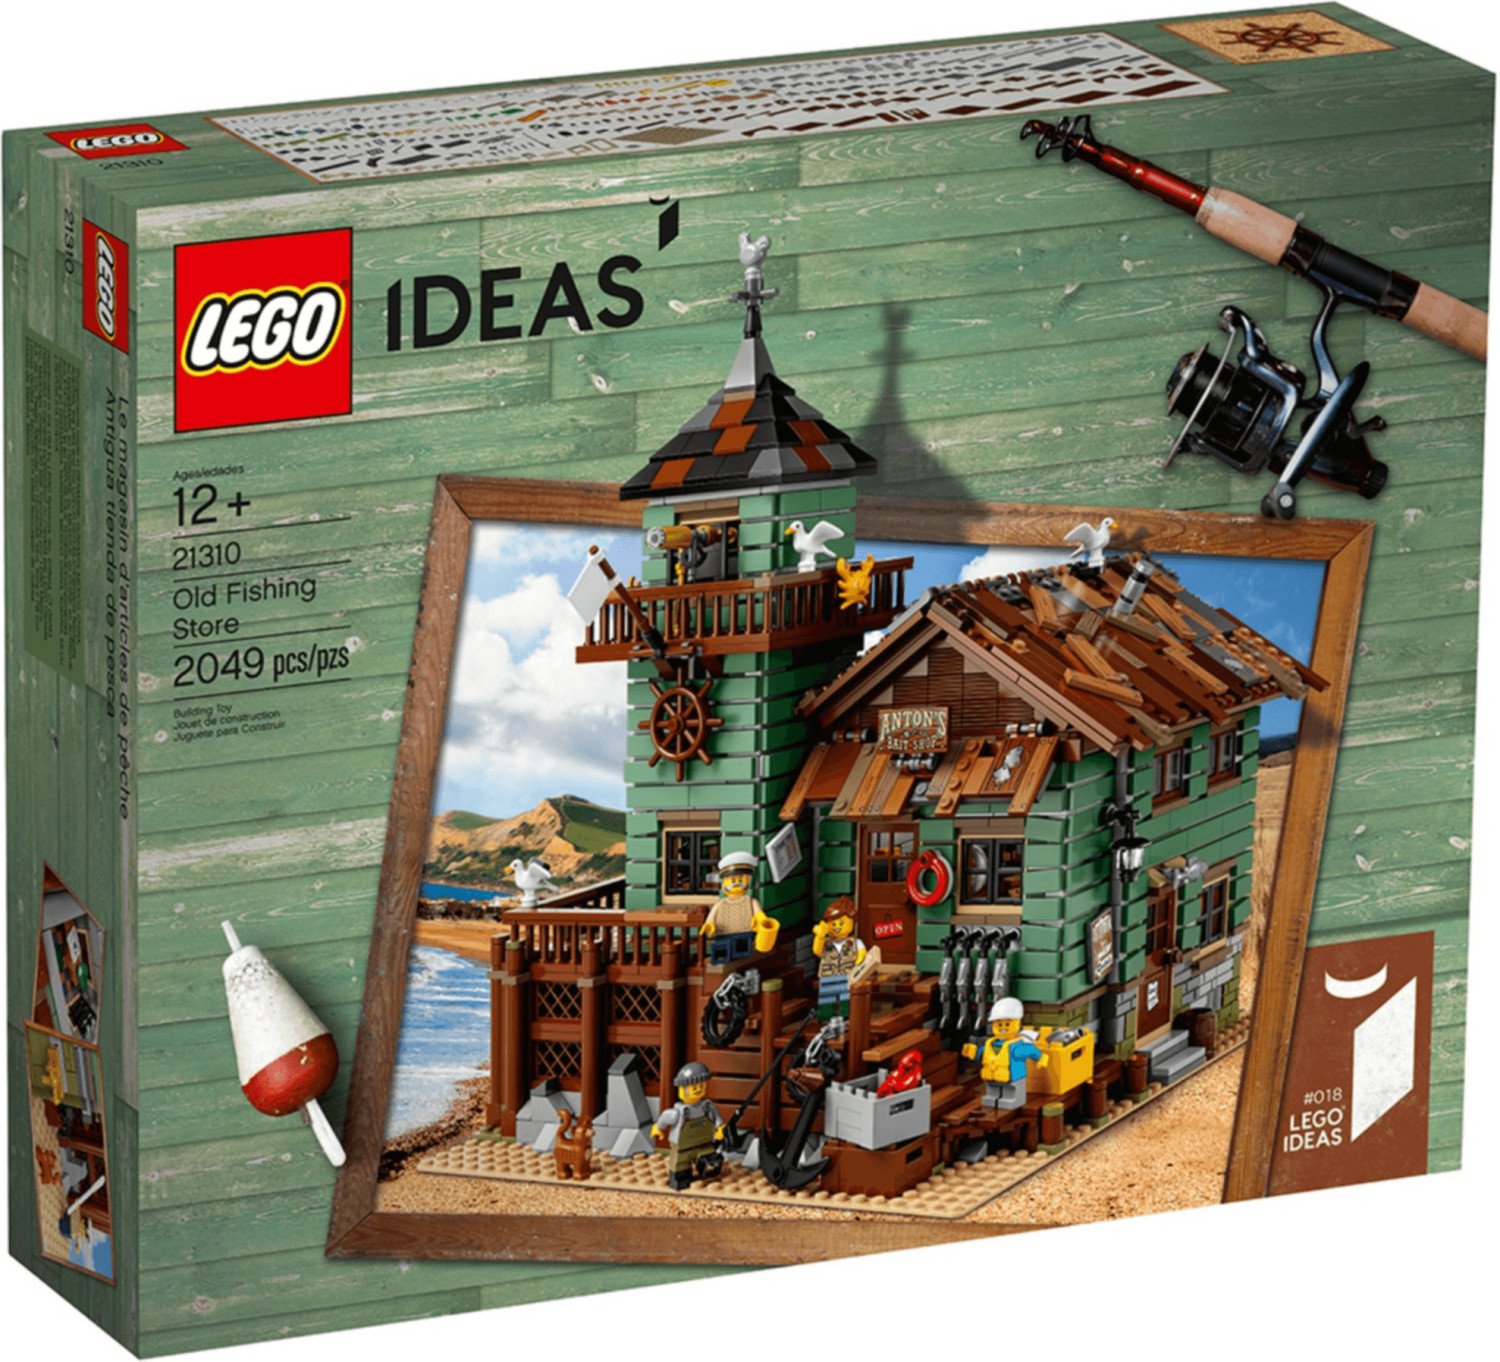 LEGO Ideas 21301 pas cher, Les oiseaux